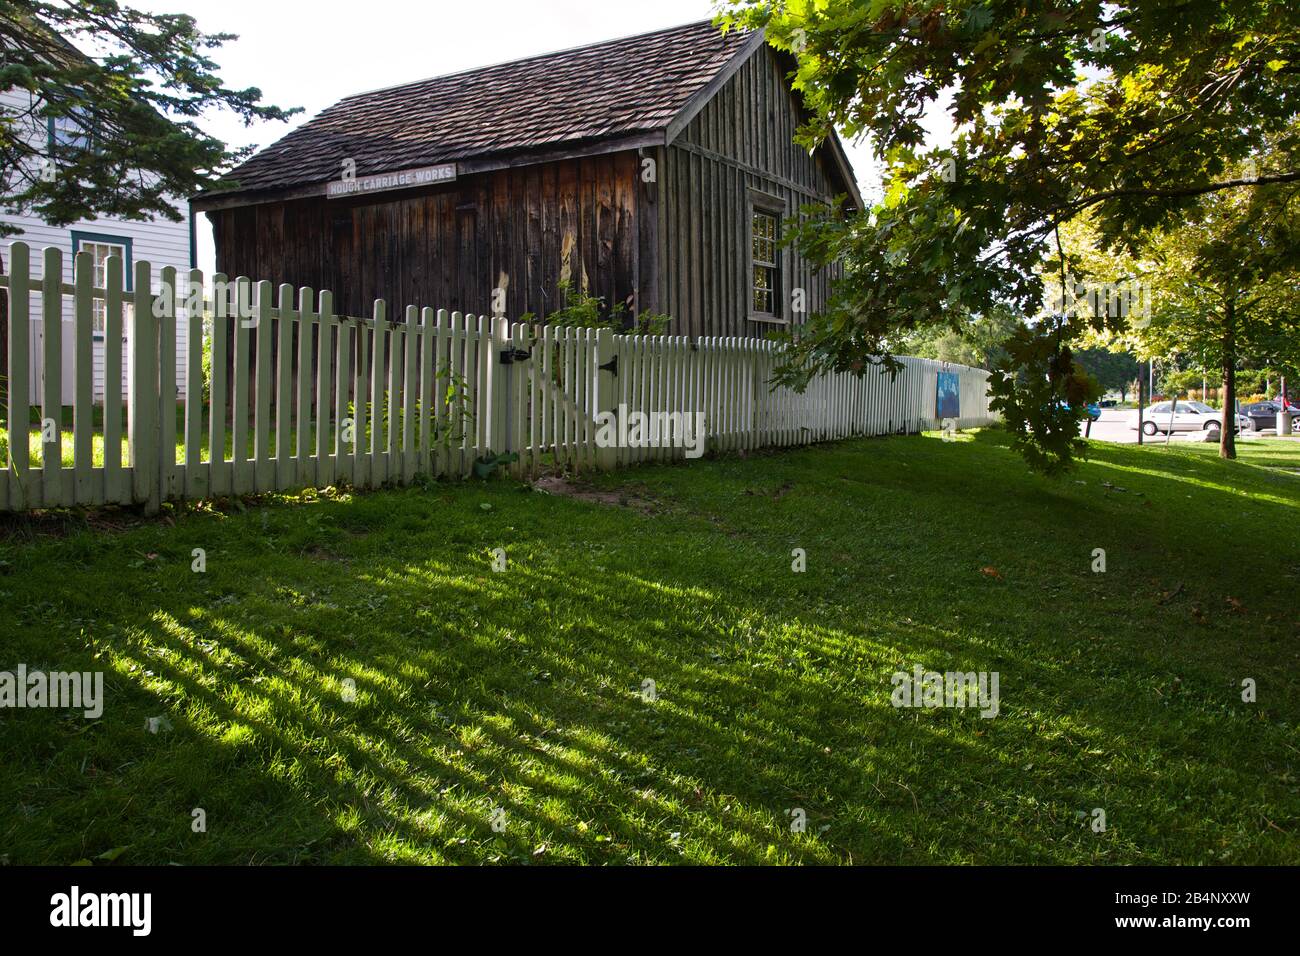 ancienne maison de grange avec une clôture de piquetage blanche. Scarborough, Ontario, Canada. Banque D'Images